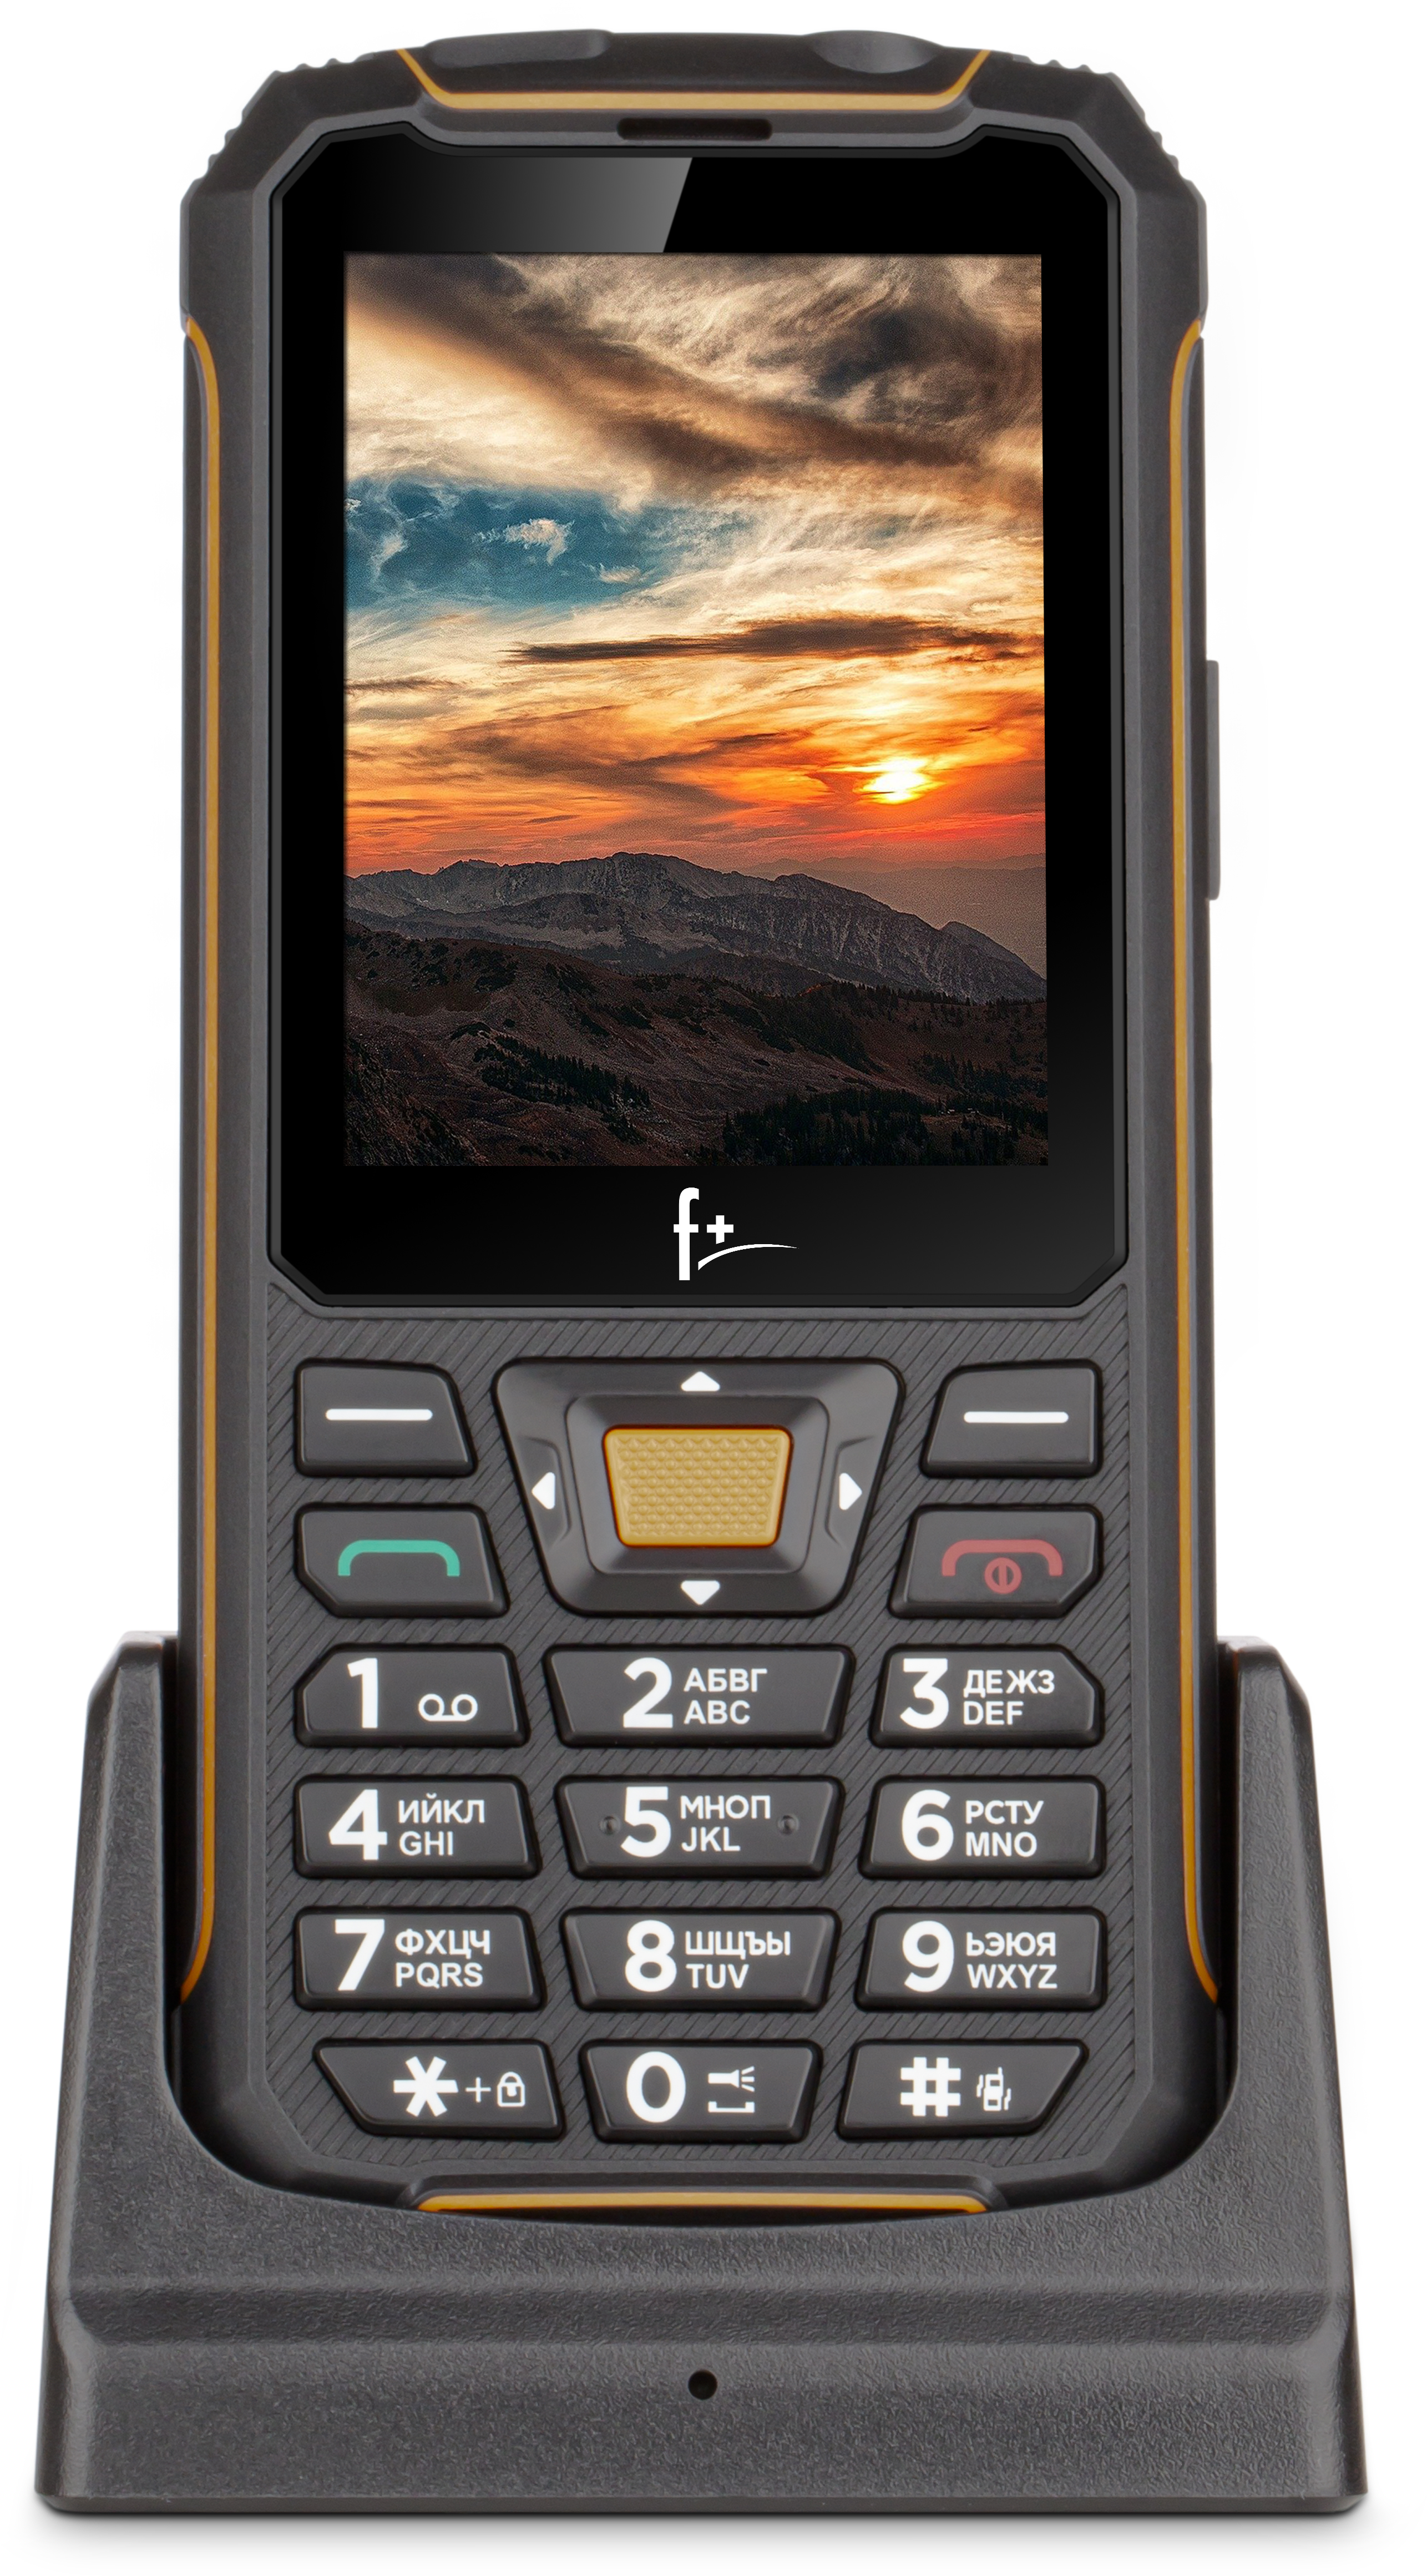 Мобильный телефон f+ f280 Black. Телефон f+ r280c Black-Orange. Fly r280. Fly f r280. Обзор телефона f